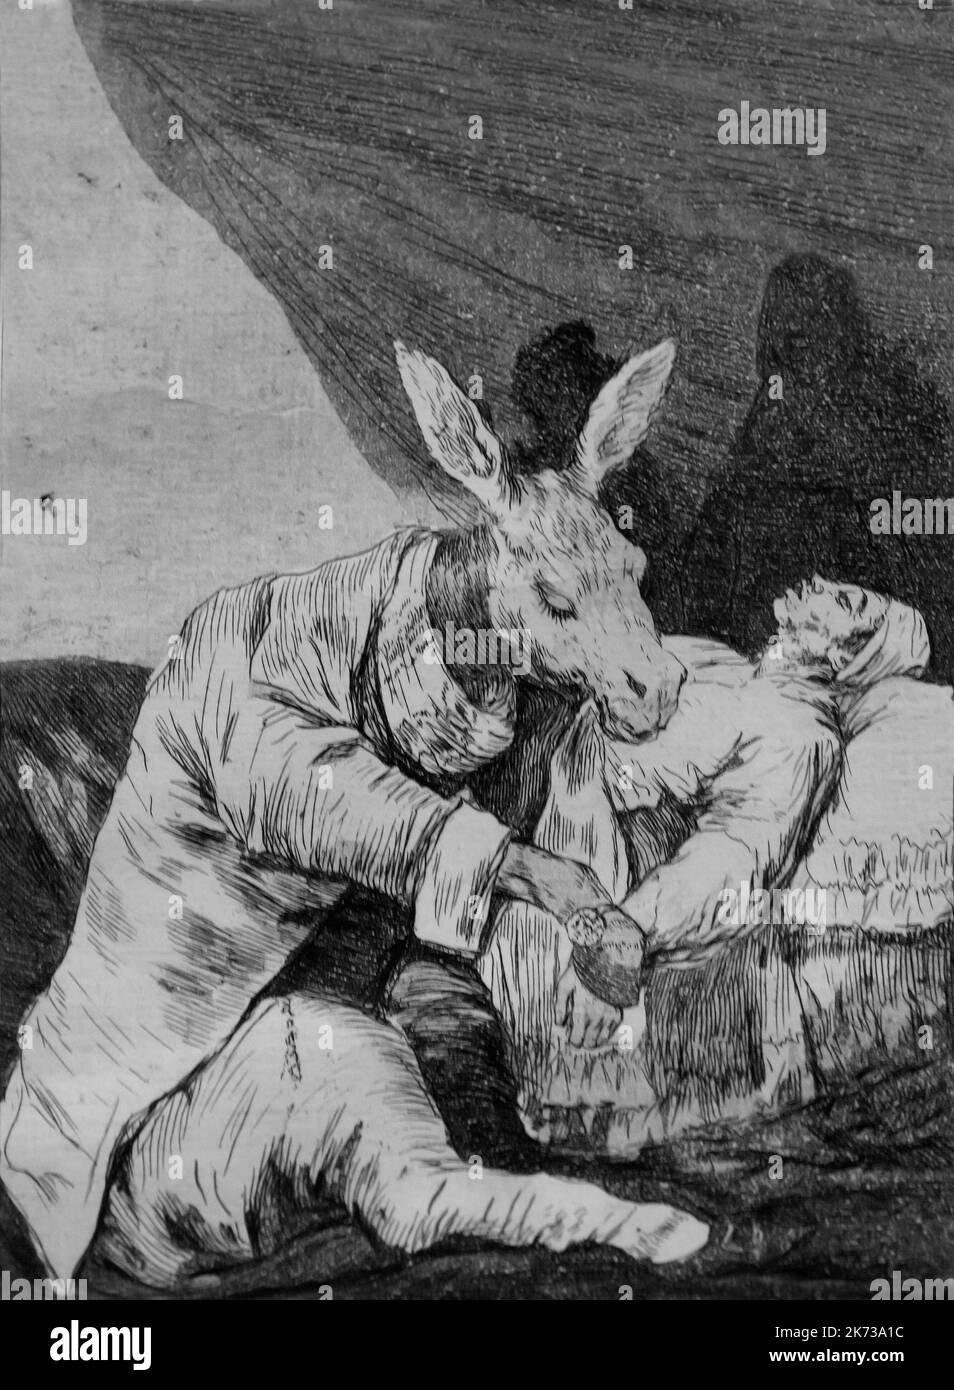 Von was krank wird er sterben? Francisco Goya, Los Caprichos, 1797-1798, Museum Berggruen, Berlin, Deutschland, Europa Stockfoto